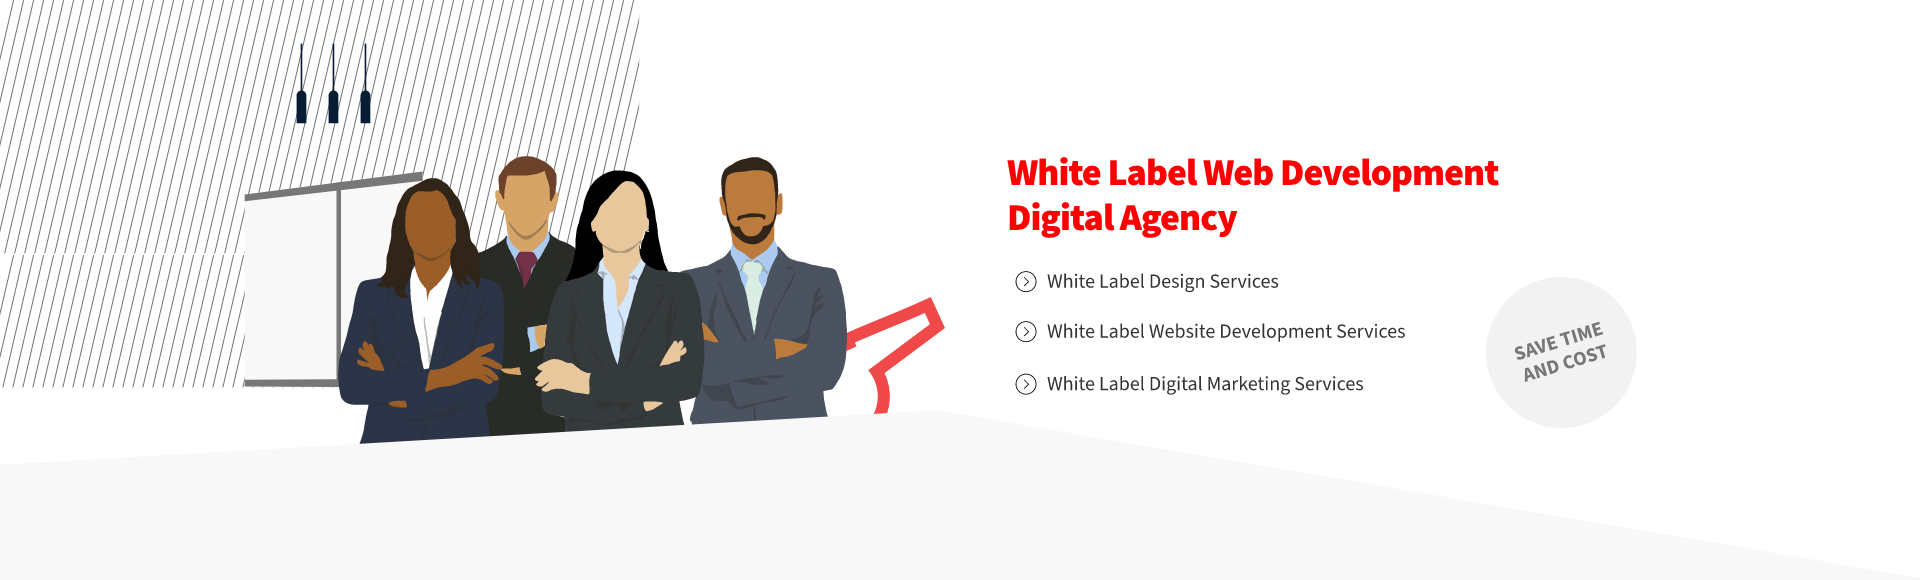 White Label Web Design, White Label Web Development, White Label Digital Marketing Services